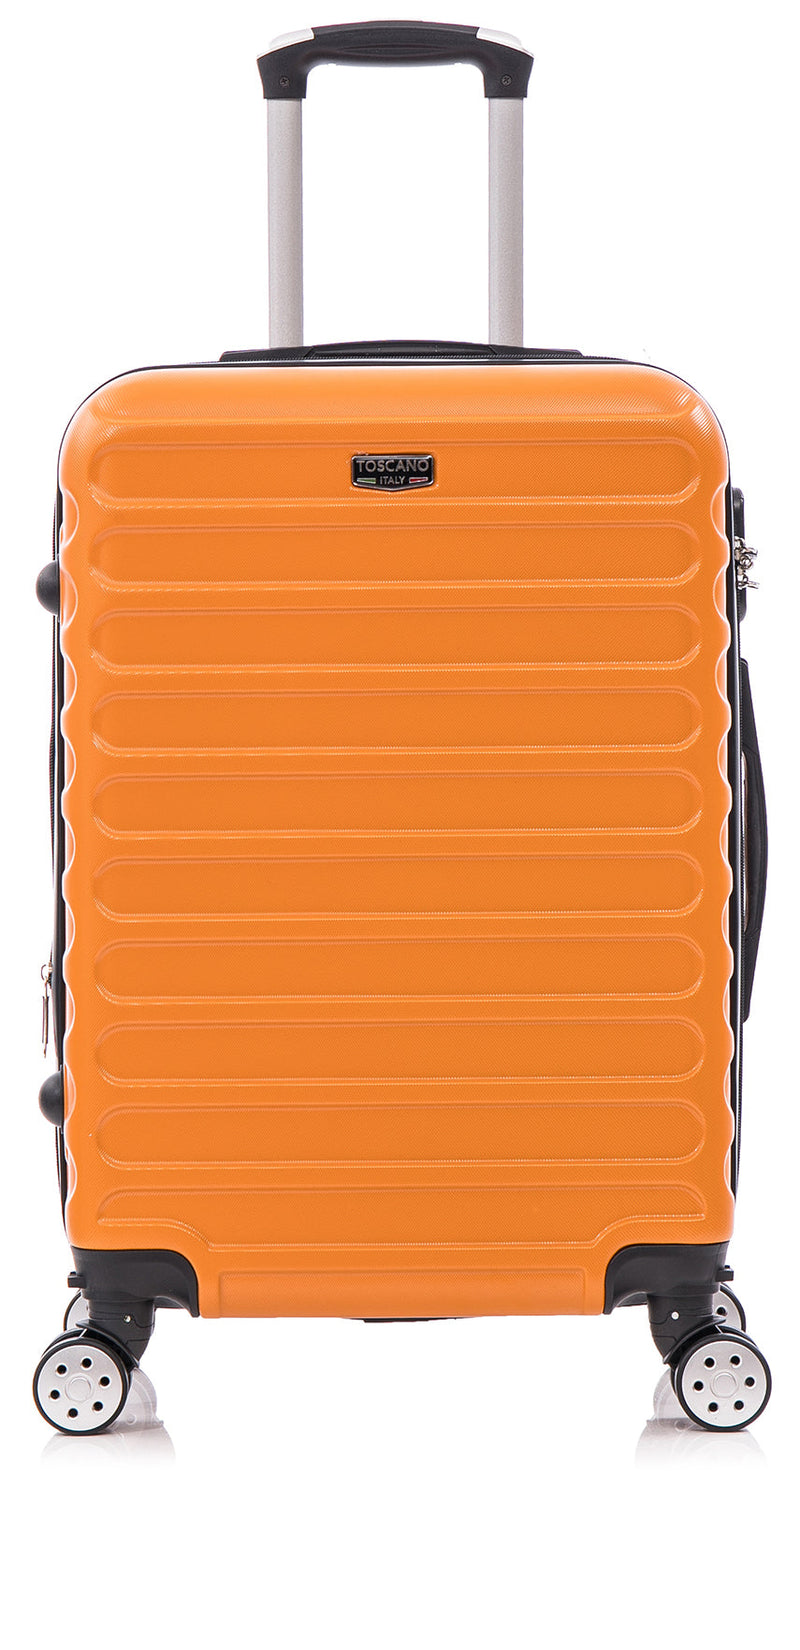 TOSCANO RADIOSITA 21" Expandable Luggage Suitcase